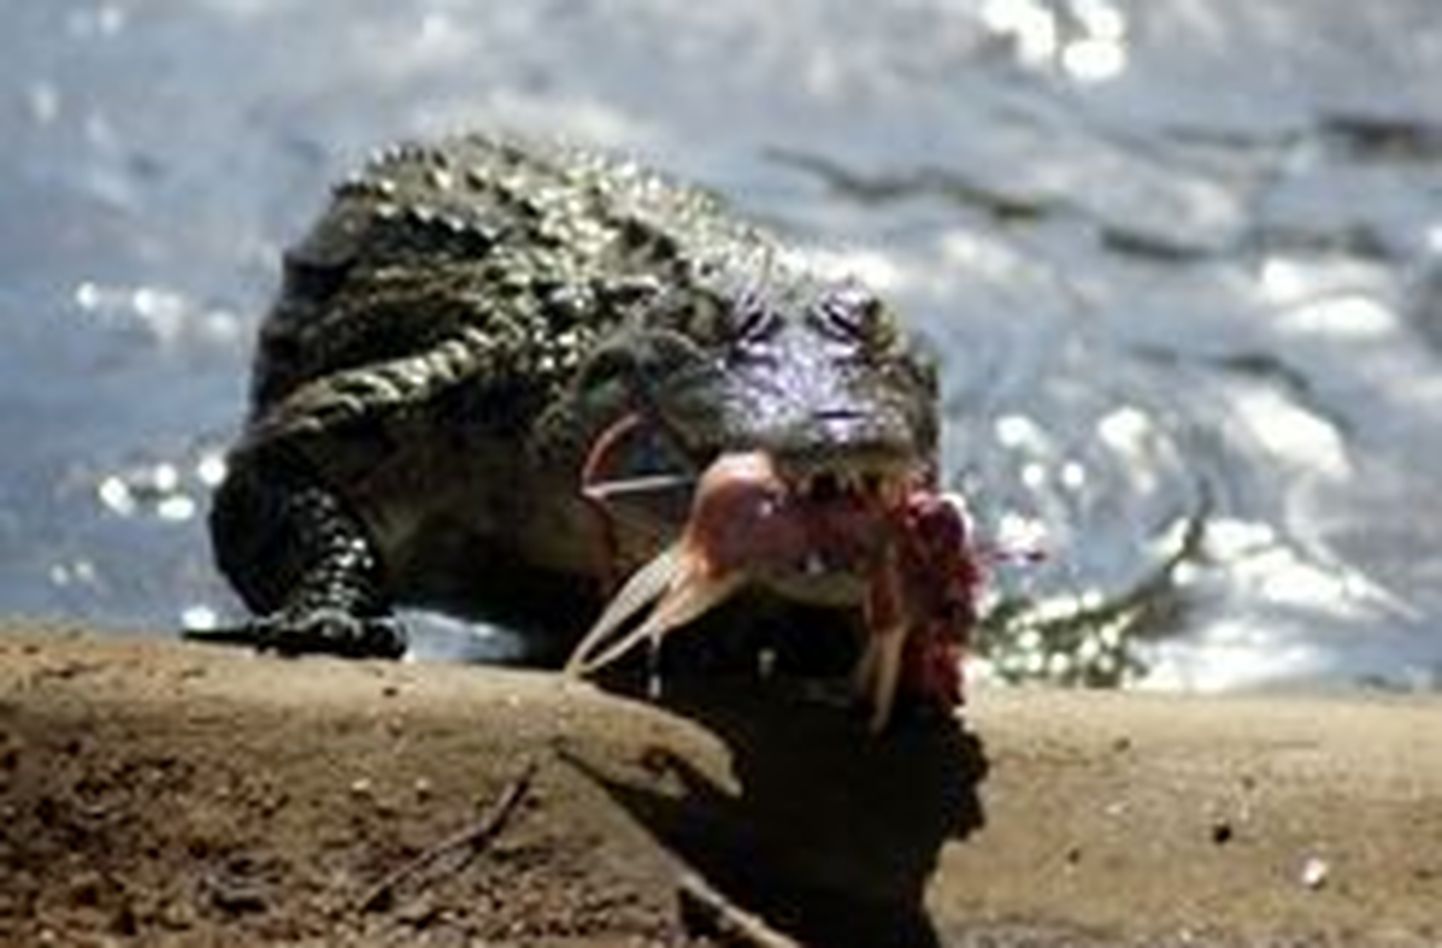 Seismeaastane julmur söötis haruldasi roomajaid krokodillile